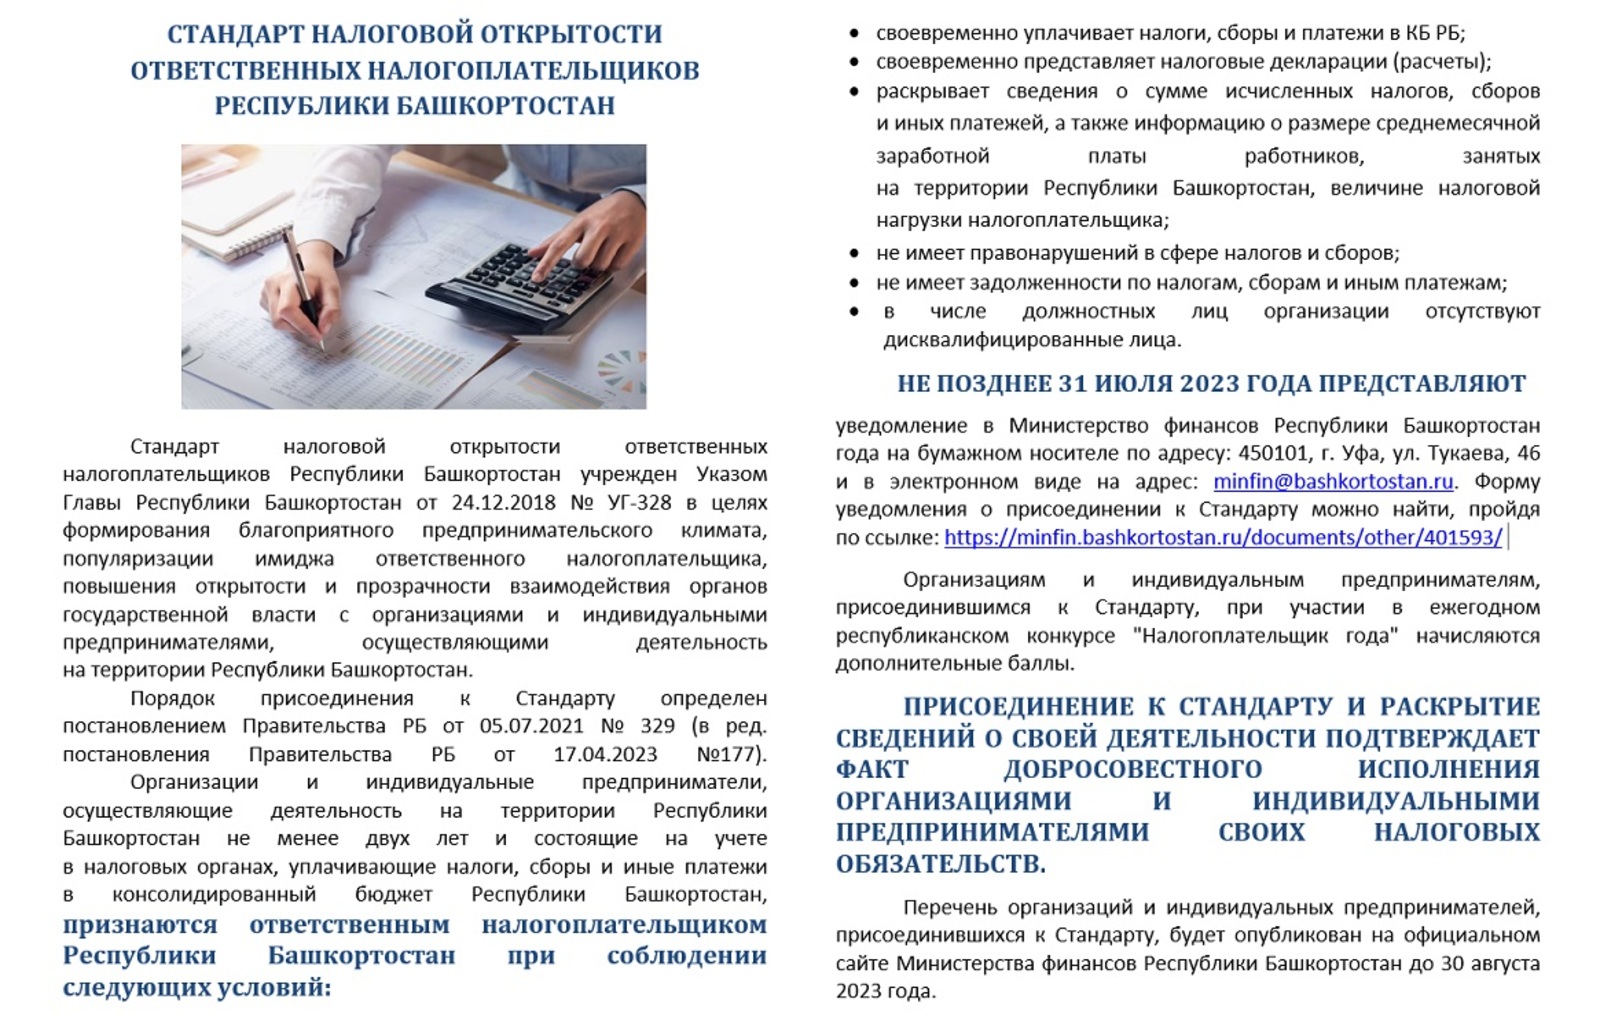 Присоединяйтесь к Стандарту налоговой открытости ответственных налогоплательщиков Республики Башкортостан!